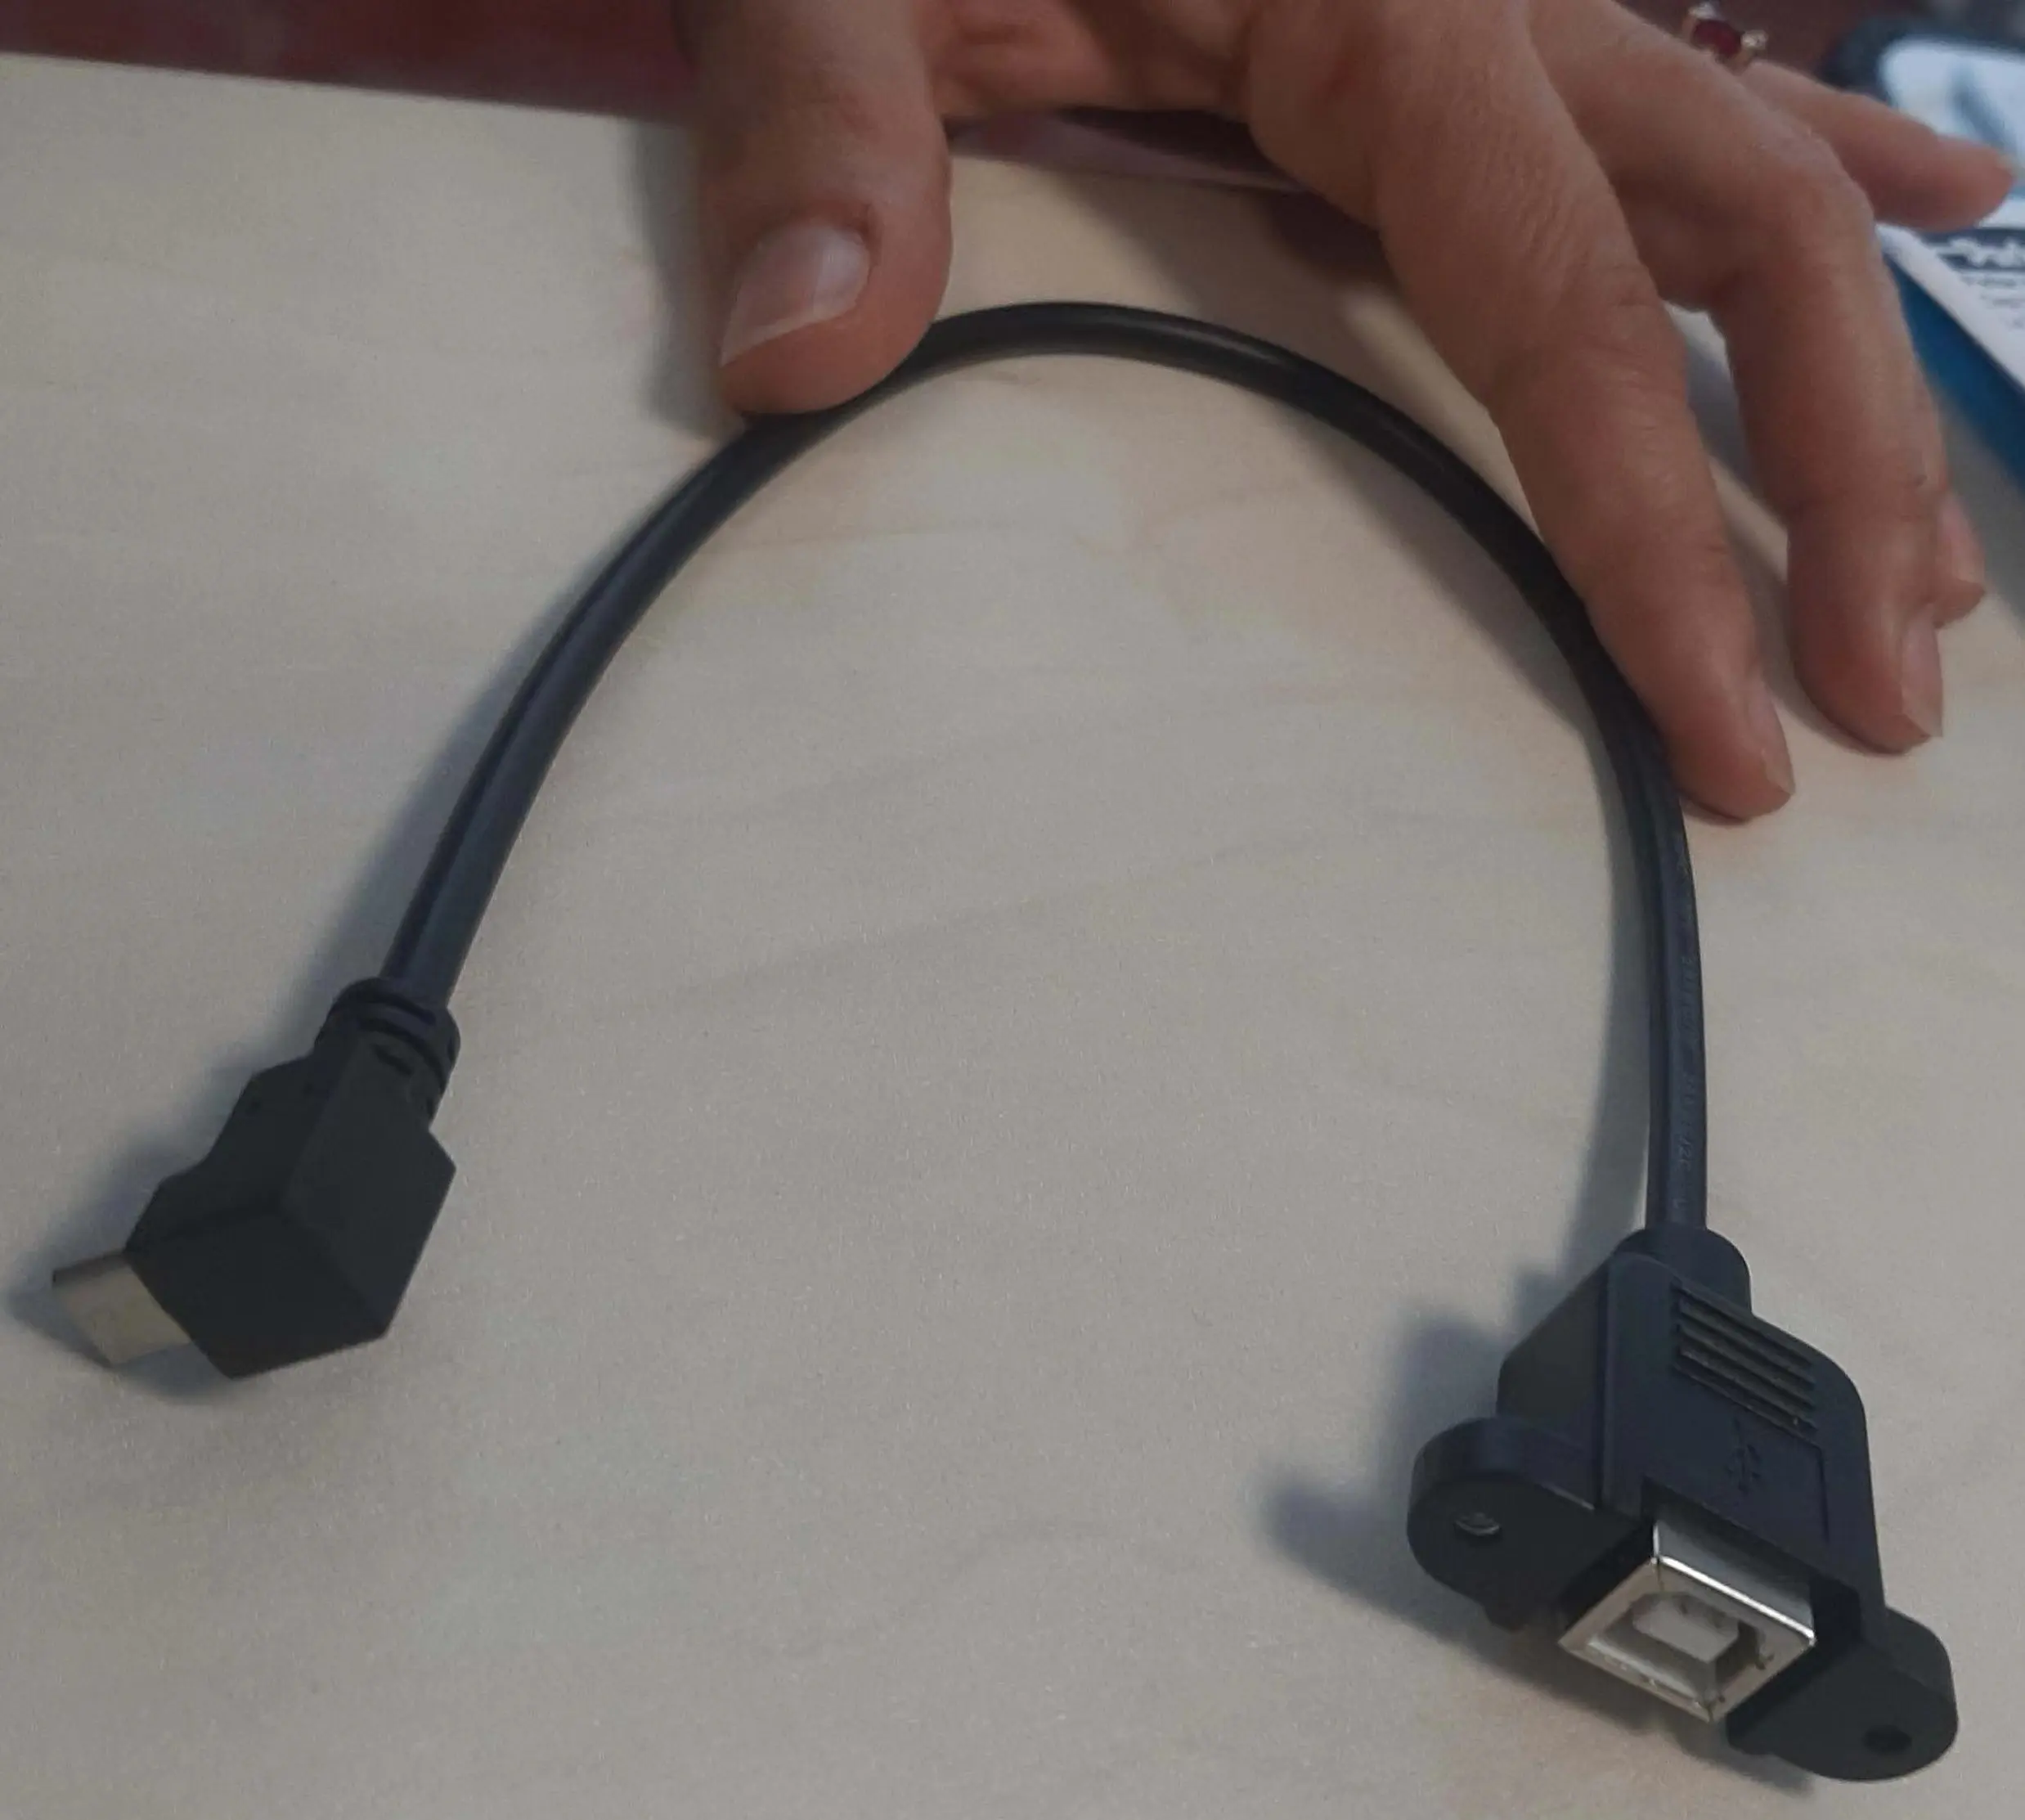 USB B Hitam dengan Dudukan Panel Ke Sudut Kanan Kabel Pengisian Data USB Mikro Charger Massal Pendek